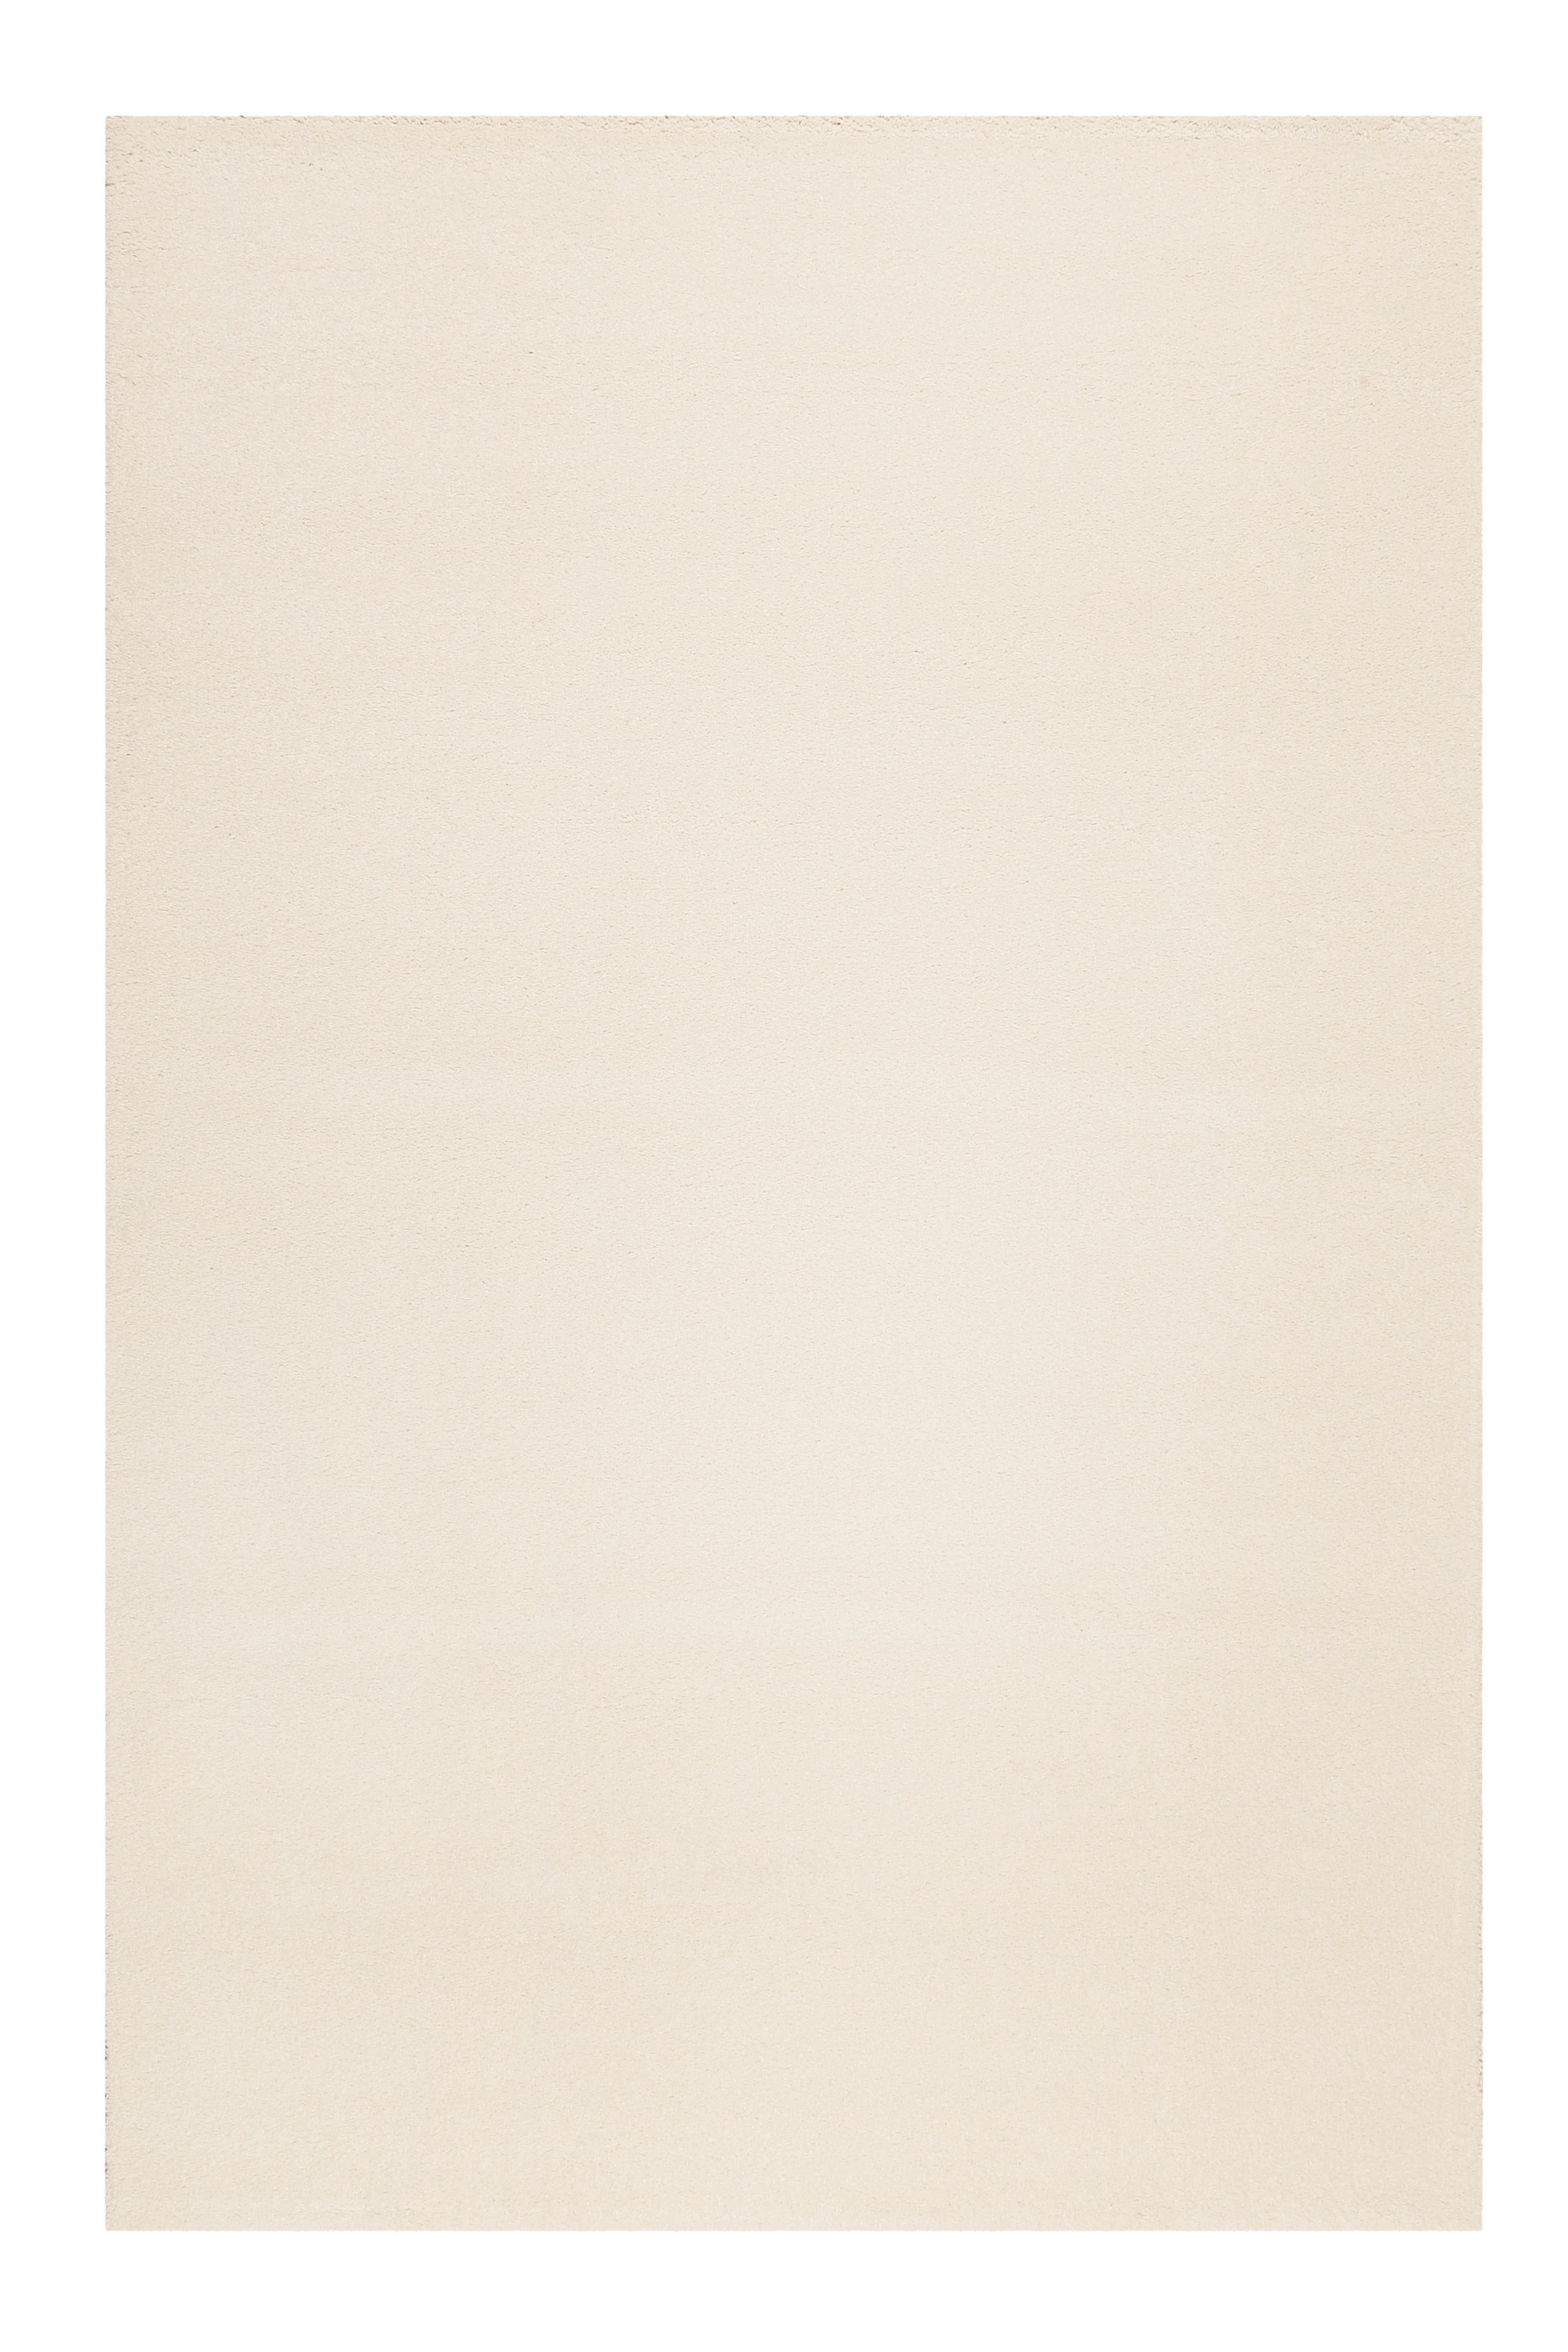 WEBTEPPICH 120/170 cm California  - Creme/Weiß, KONVENTIONELL, Textil (120/170cm) - Esprit